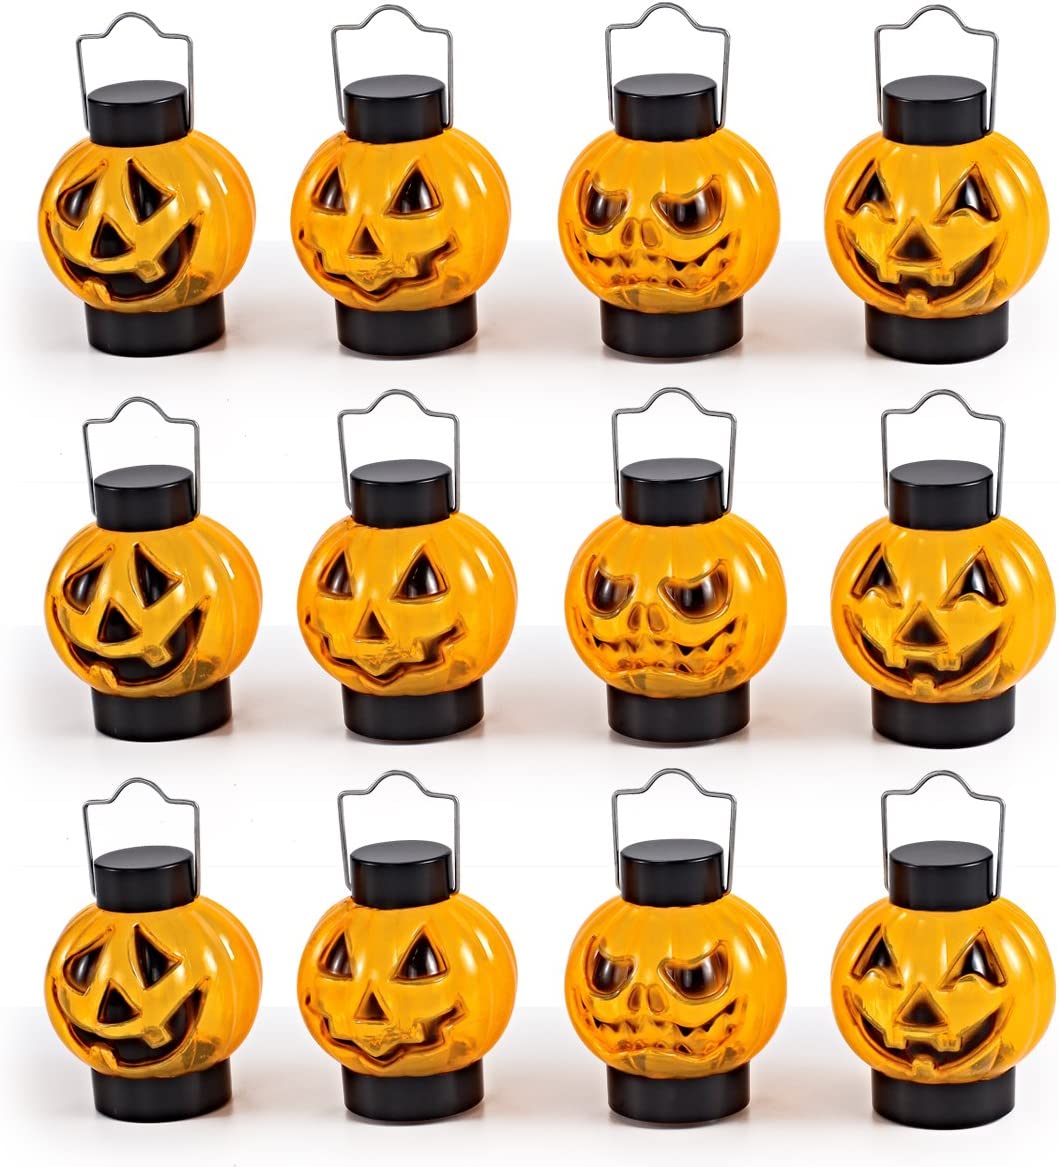  4. 1 Dozen JOYIN Halloween Pumpkins Lantern 